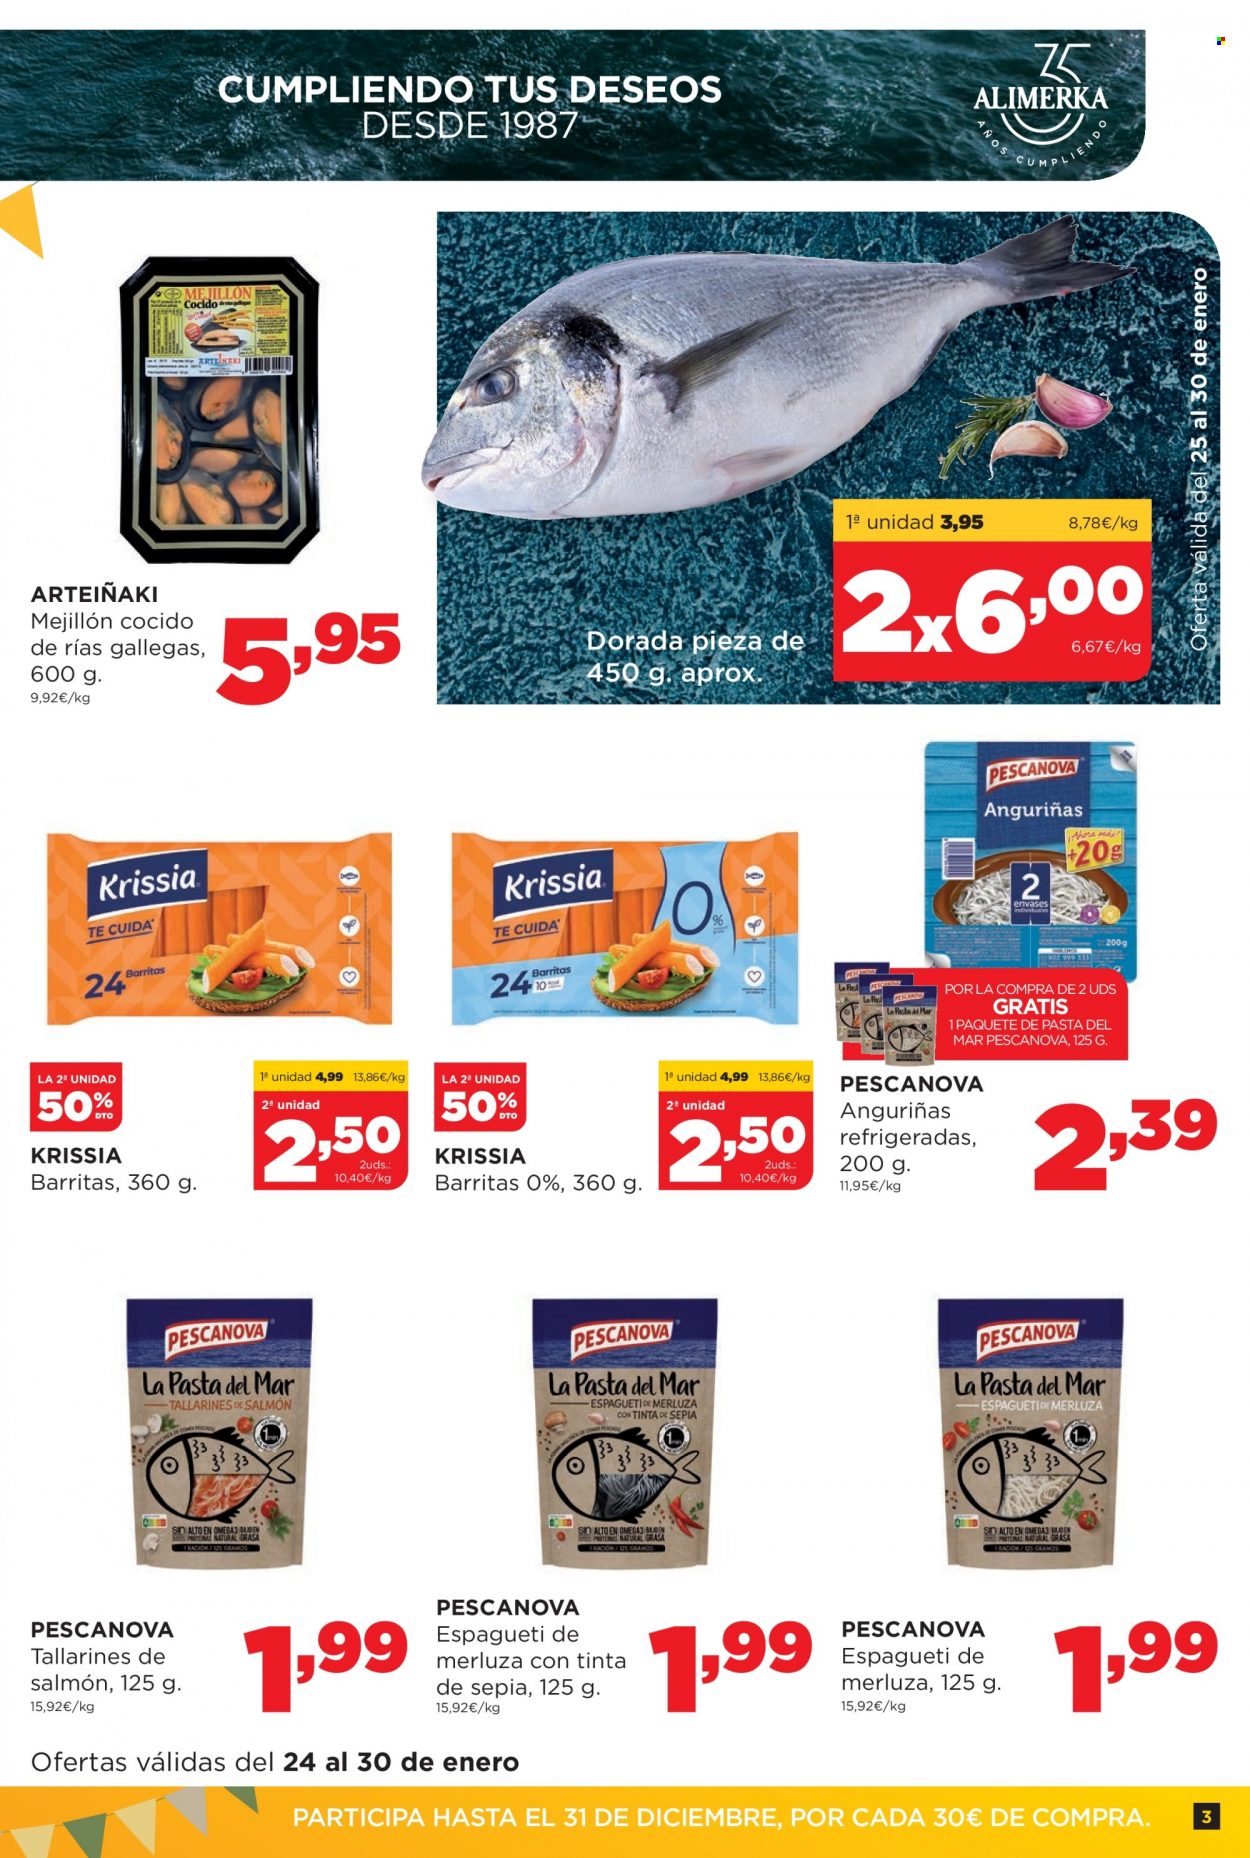 thumbnail - Folleto actual Alimerka - 24/01/22 - 30/01/22 - Ventas - merluza, dorada pescado, mejillones, salmón, espagueti. Página 3.